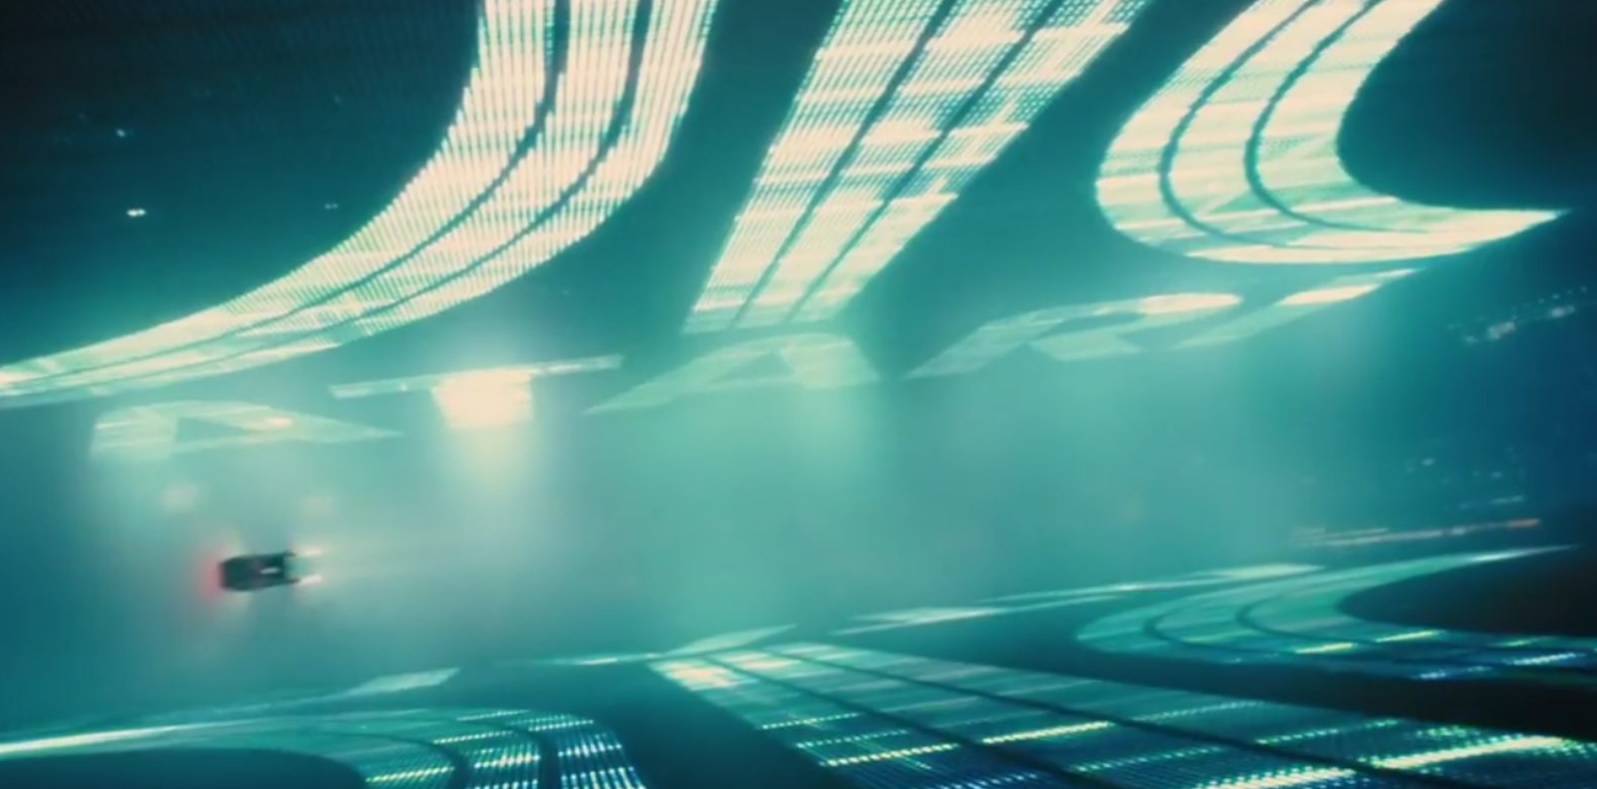 Blade Runner: a 40 años de su estreno te contamos 10 curiosidades de este clásico de ciencia ficción